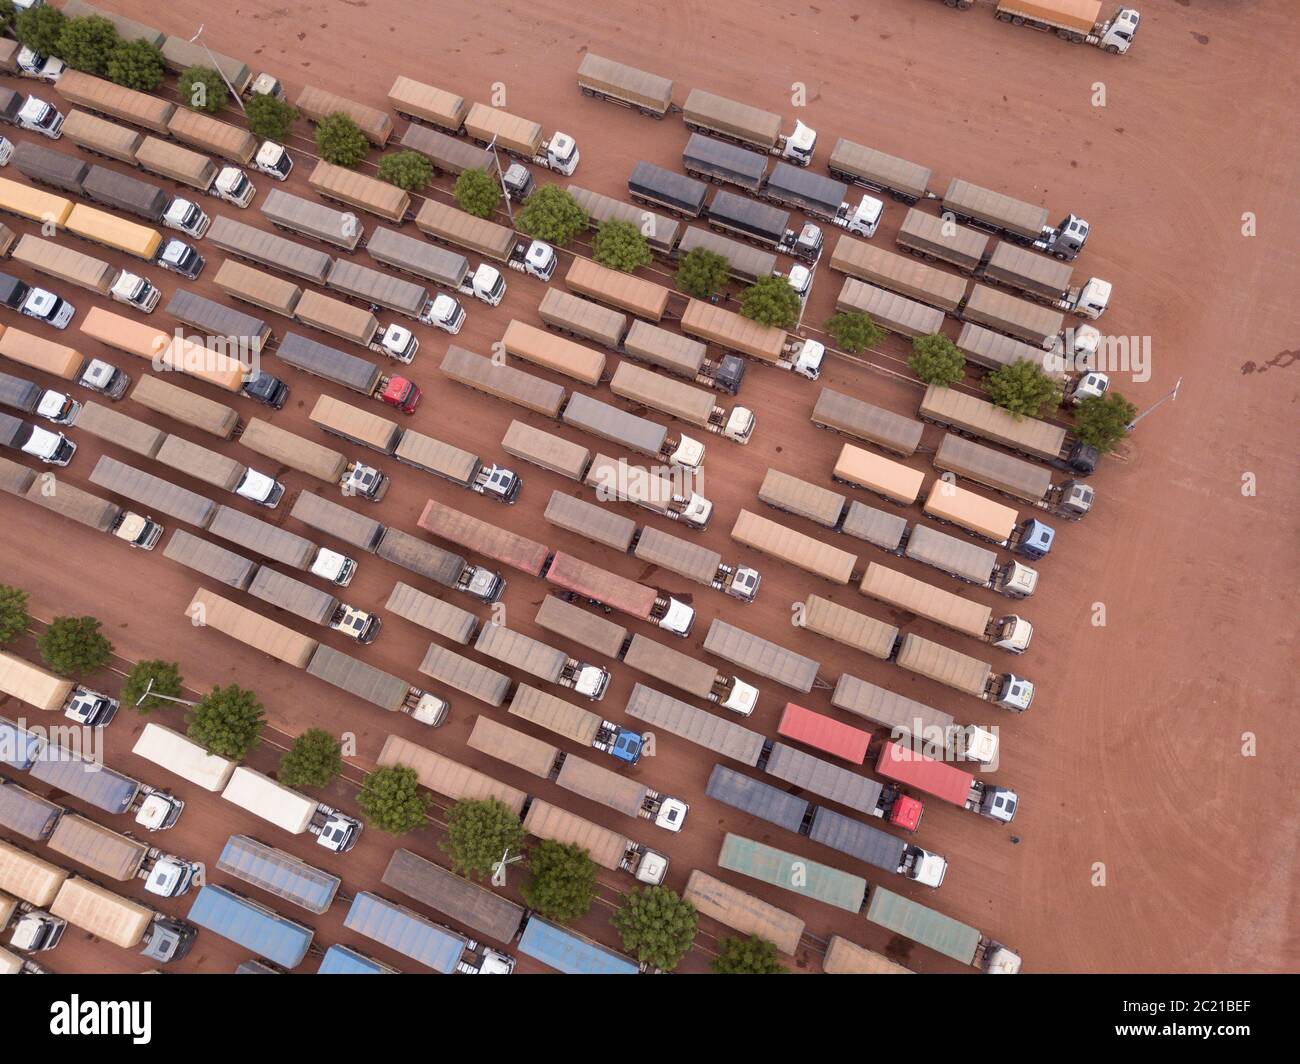 Vue aérienne de drone vue de dessus de la rangée de camions transportant du soja dans le garage de la station-service BR 163 sur Amazon, Para, Brésil. Concept de transport. Banque D'Images